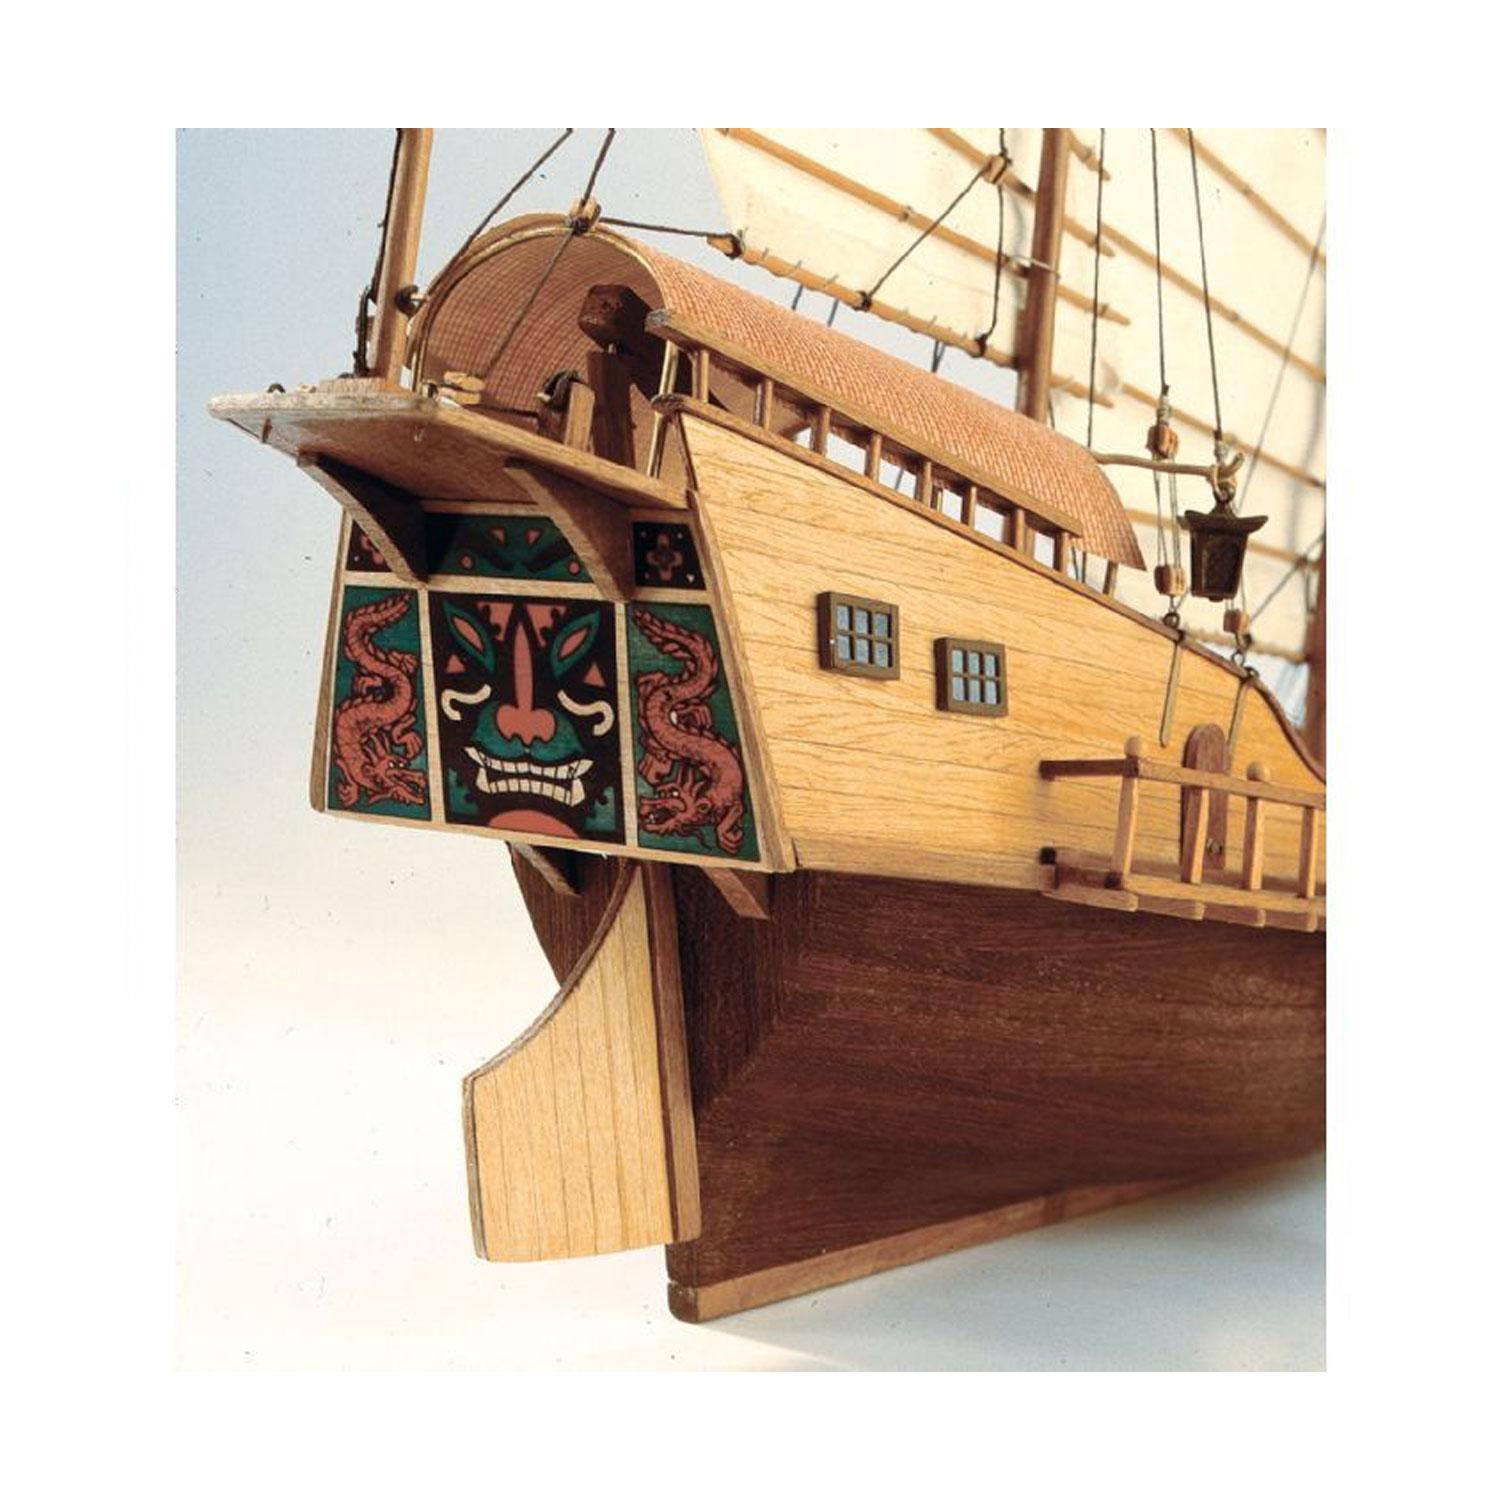 Maquette bateau en bois : Red Dragon Jonque Chinoise